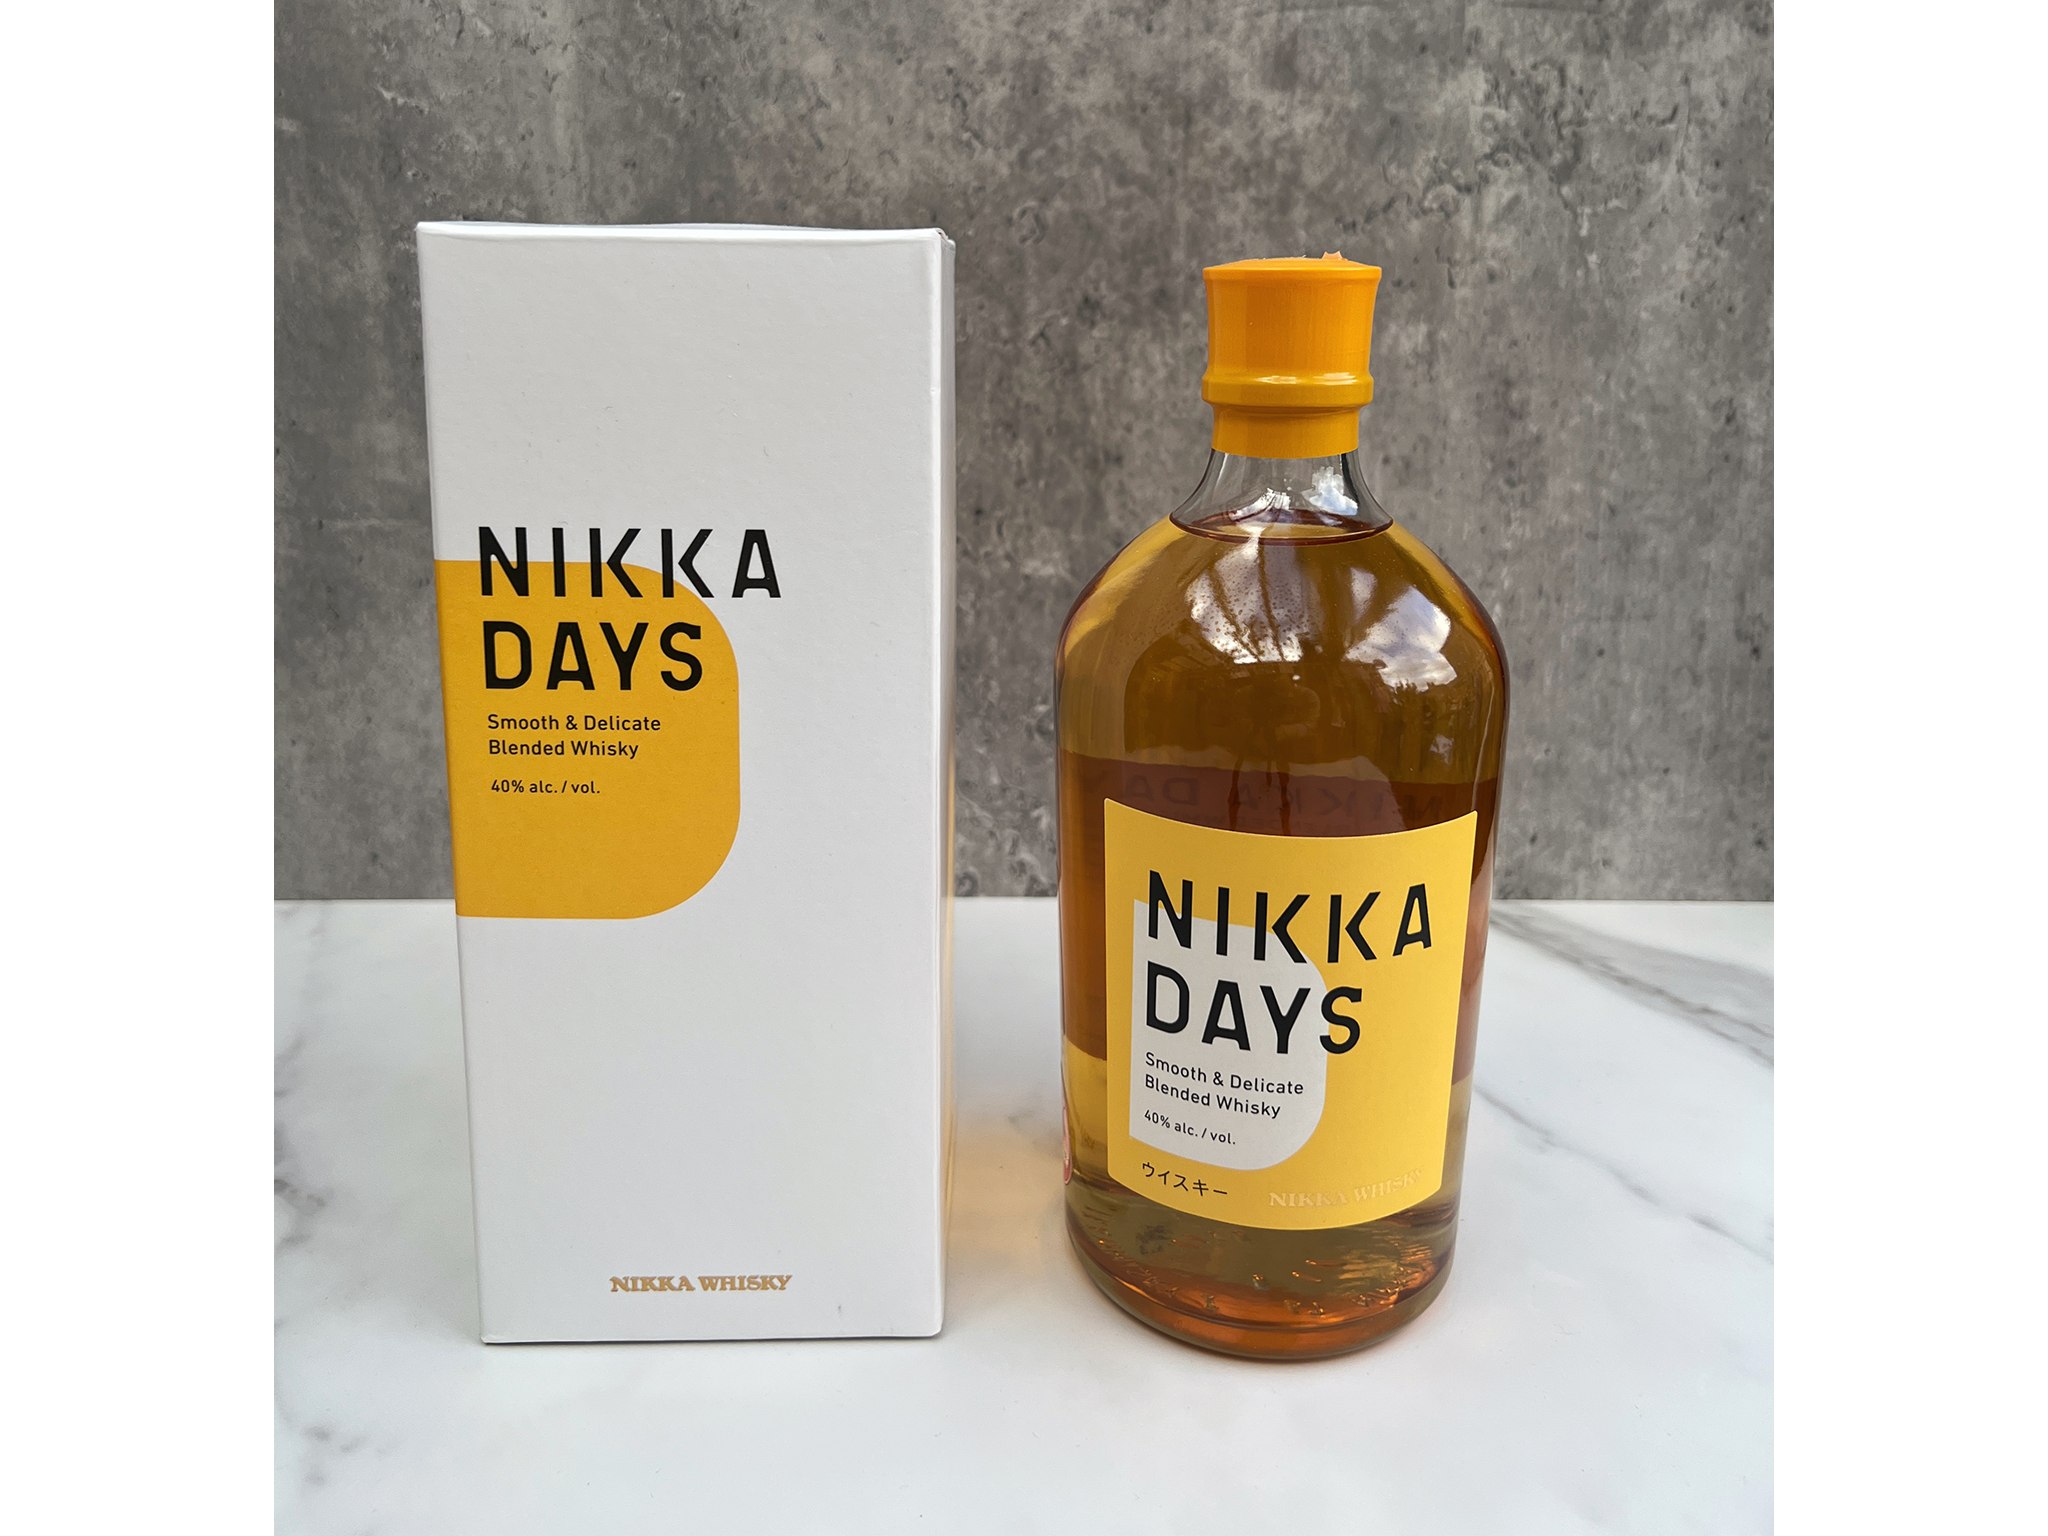 Nikka days blended whisky